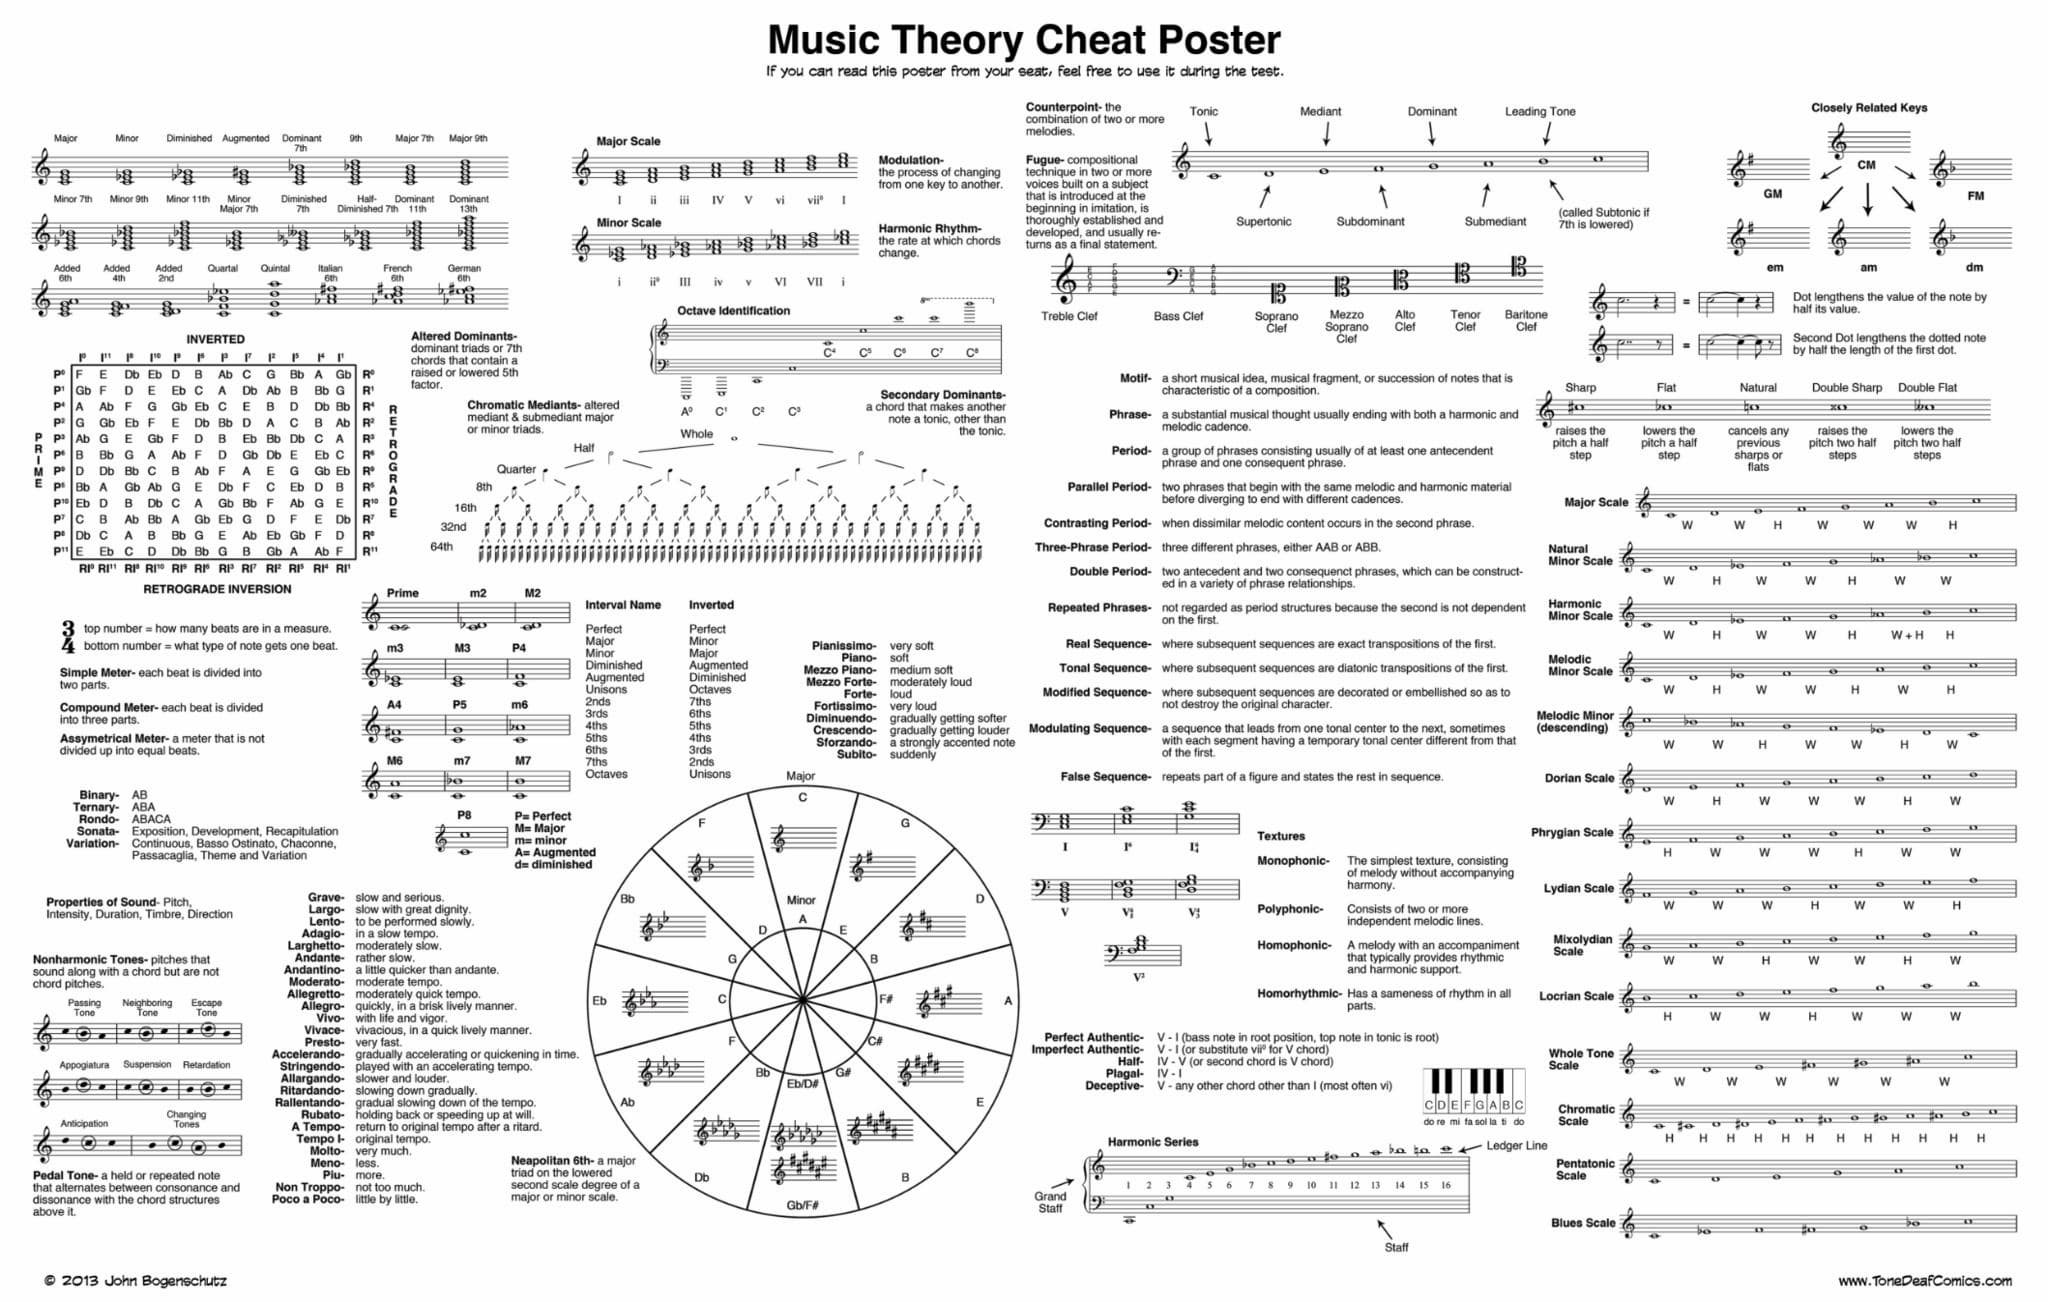 Music theory cheat sheet